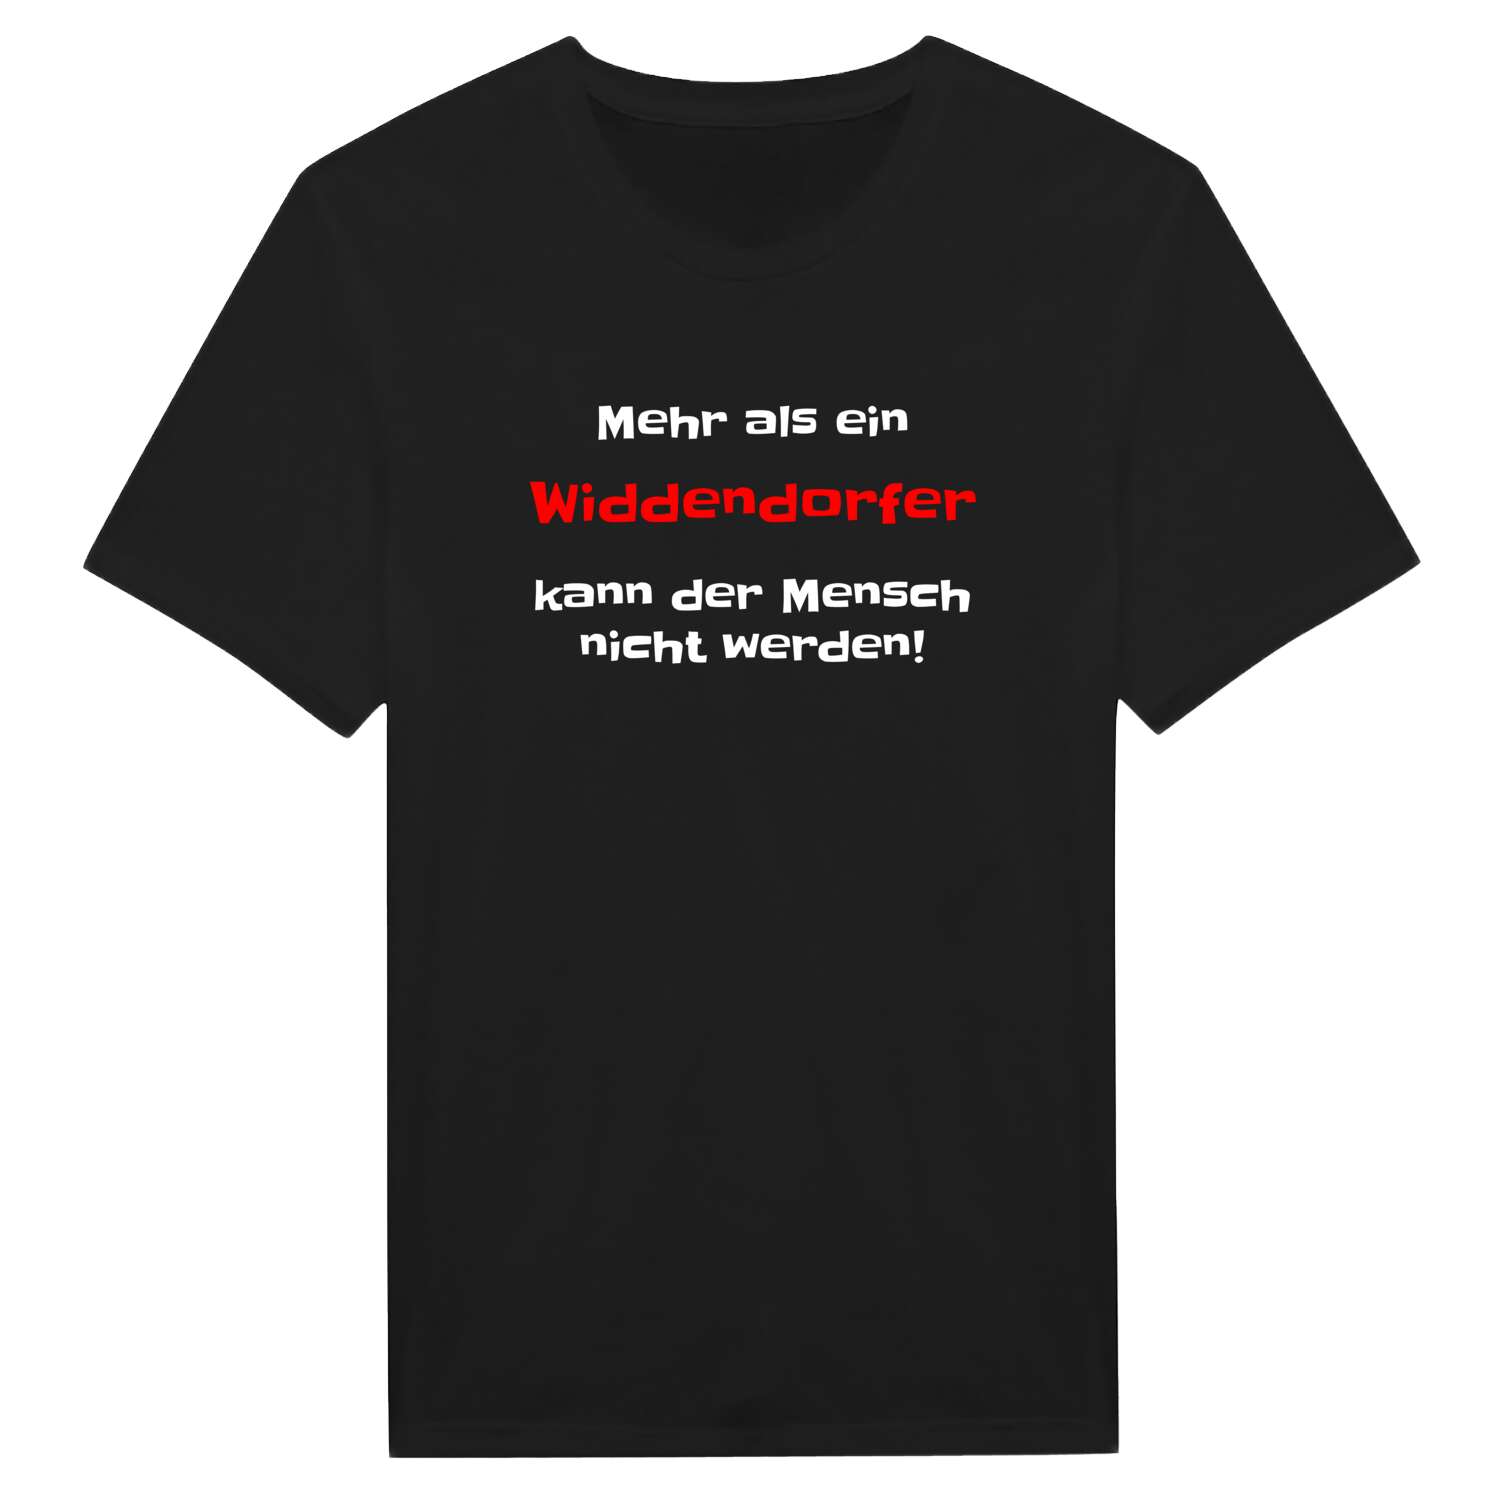 Widdendorf T-Shirt »Mehr als ein«